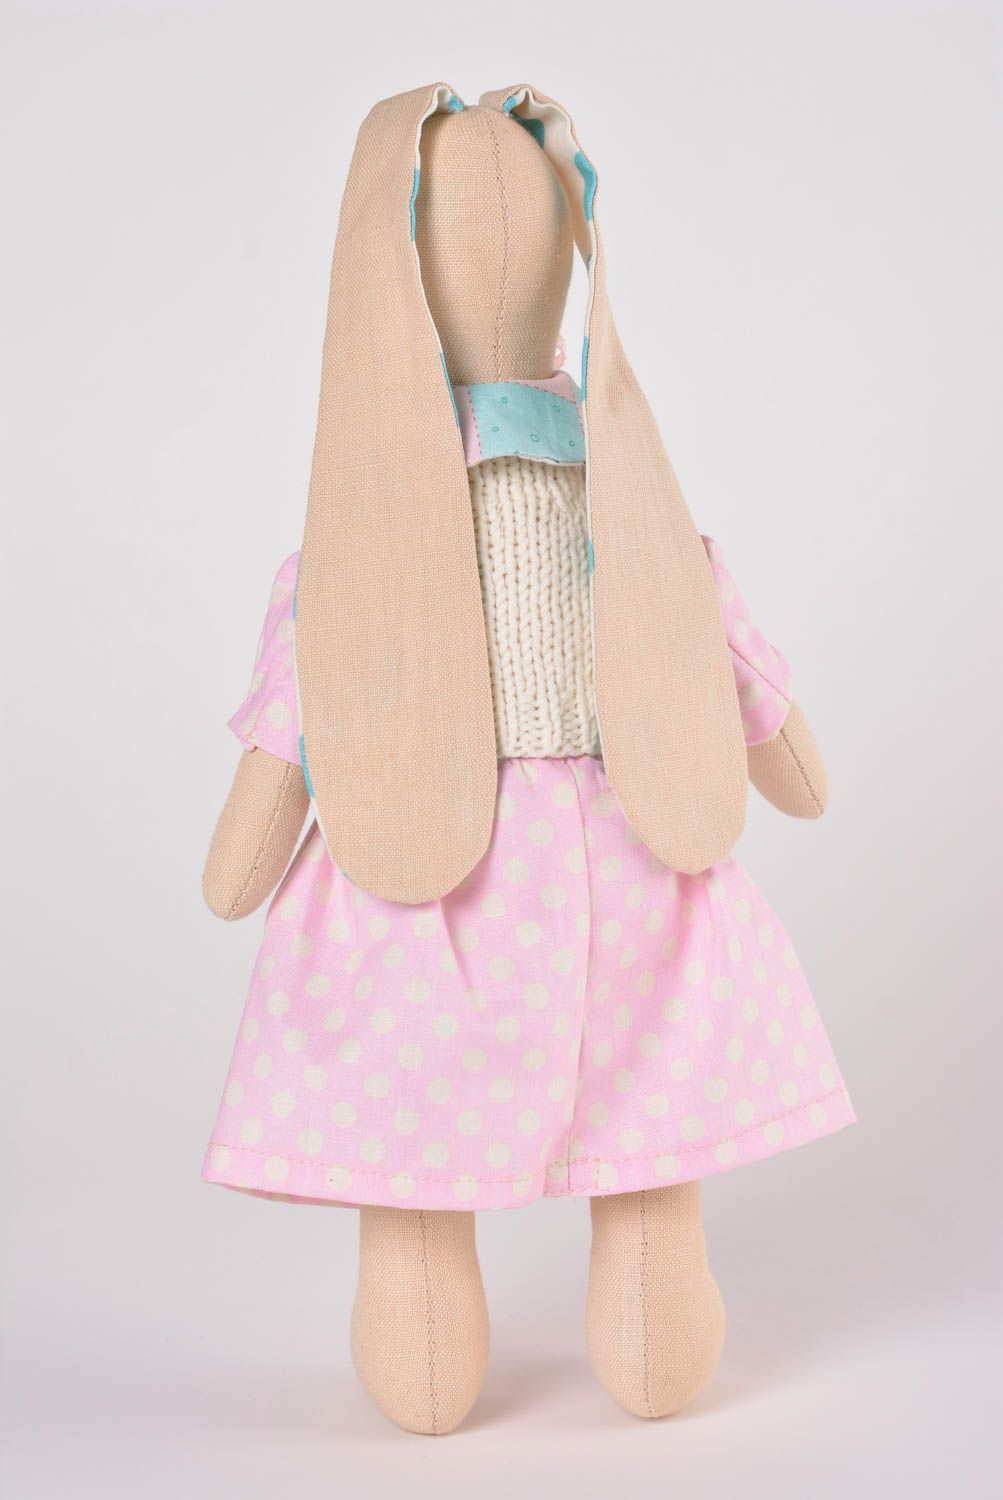 Игрушка заяц ручной работы авторская игрушка из ткани стильный подарок ребенку фото 3